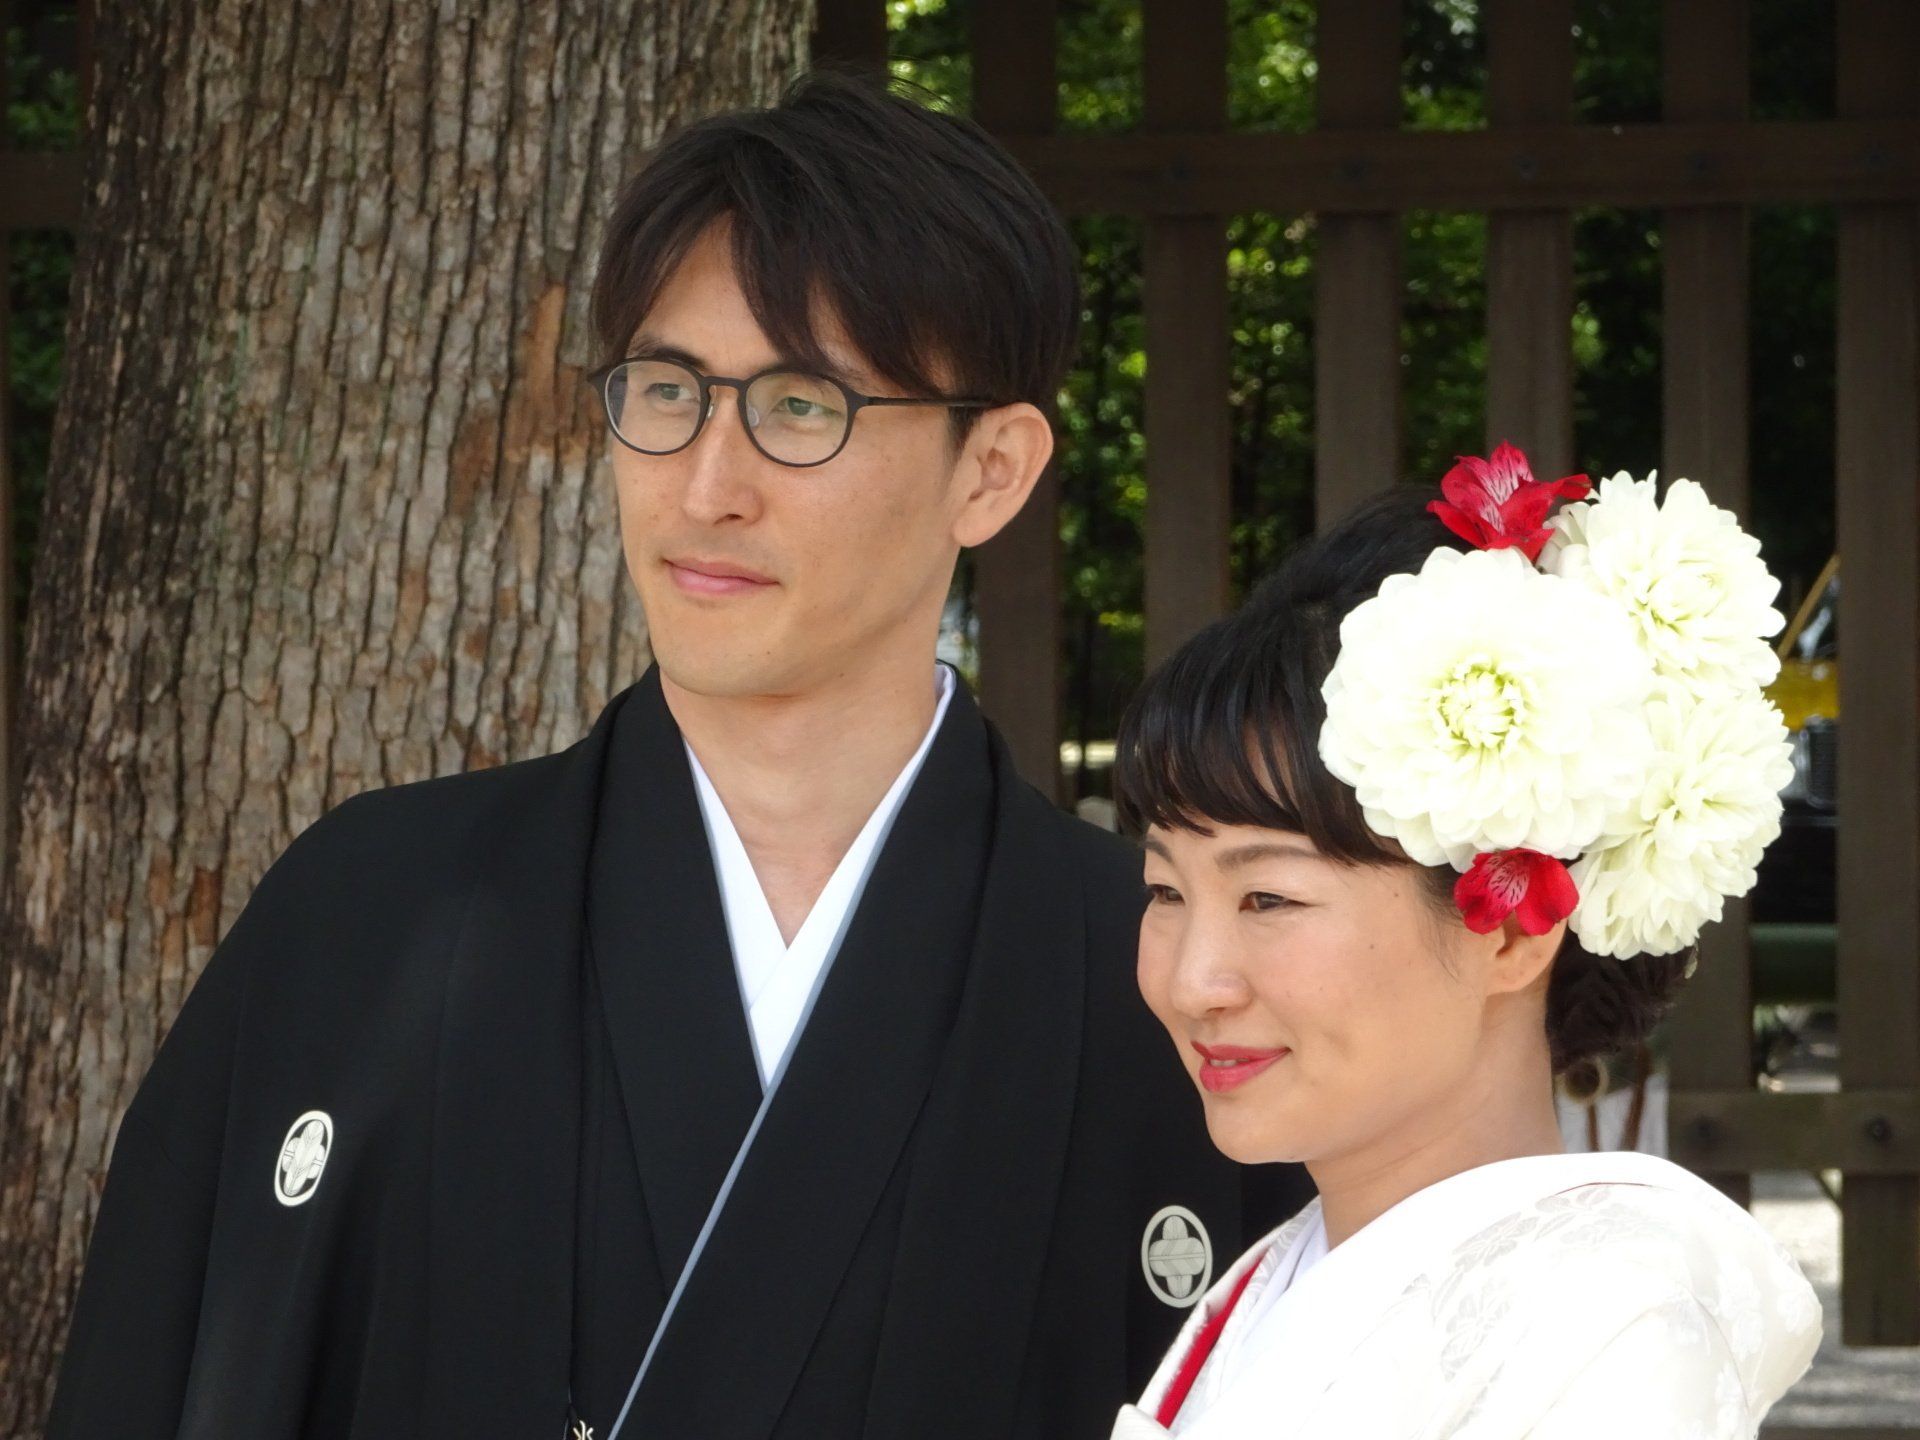 Shinto-Hochzeit; Meji-Schrein; Tokyo; Japan-Reise; Japan-Rundreise; Japan-Gruppenreise; Japan-Bahnreise; www.japan-tours.de